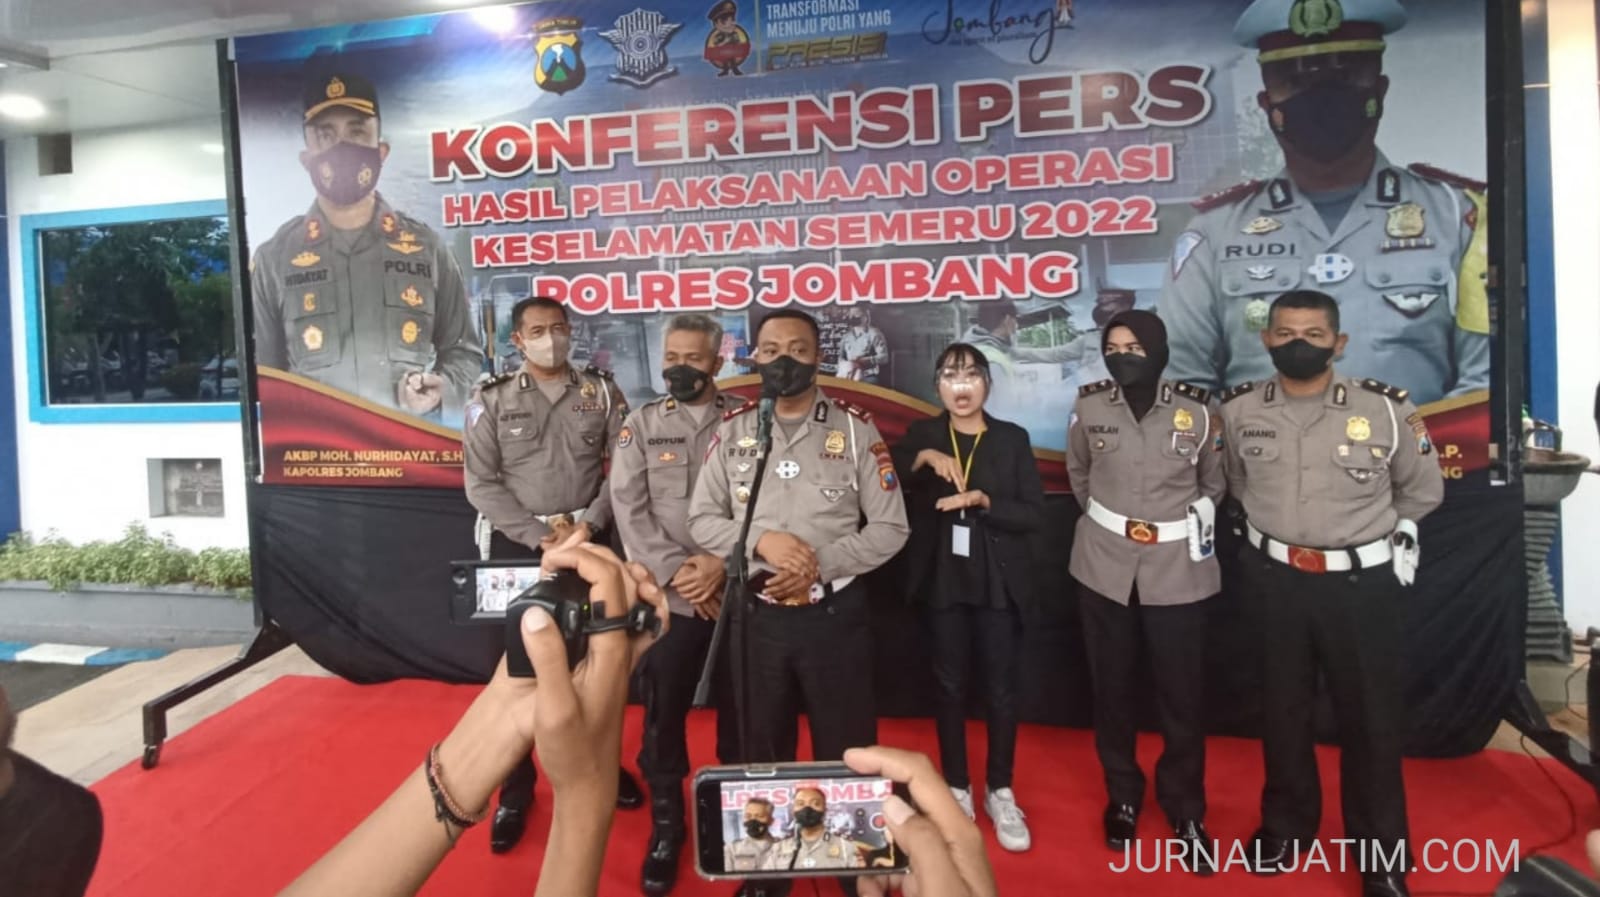 4 Orang Tewas Kecelakaan Selama Operasi Keselamatan Semeru di Jombang